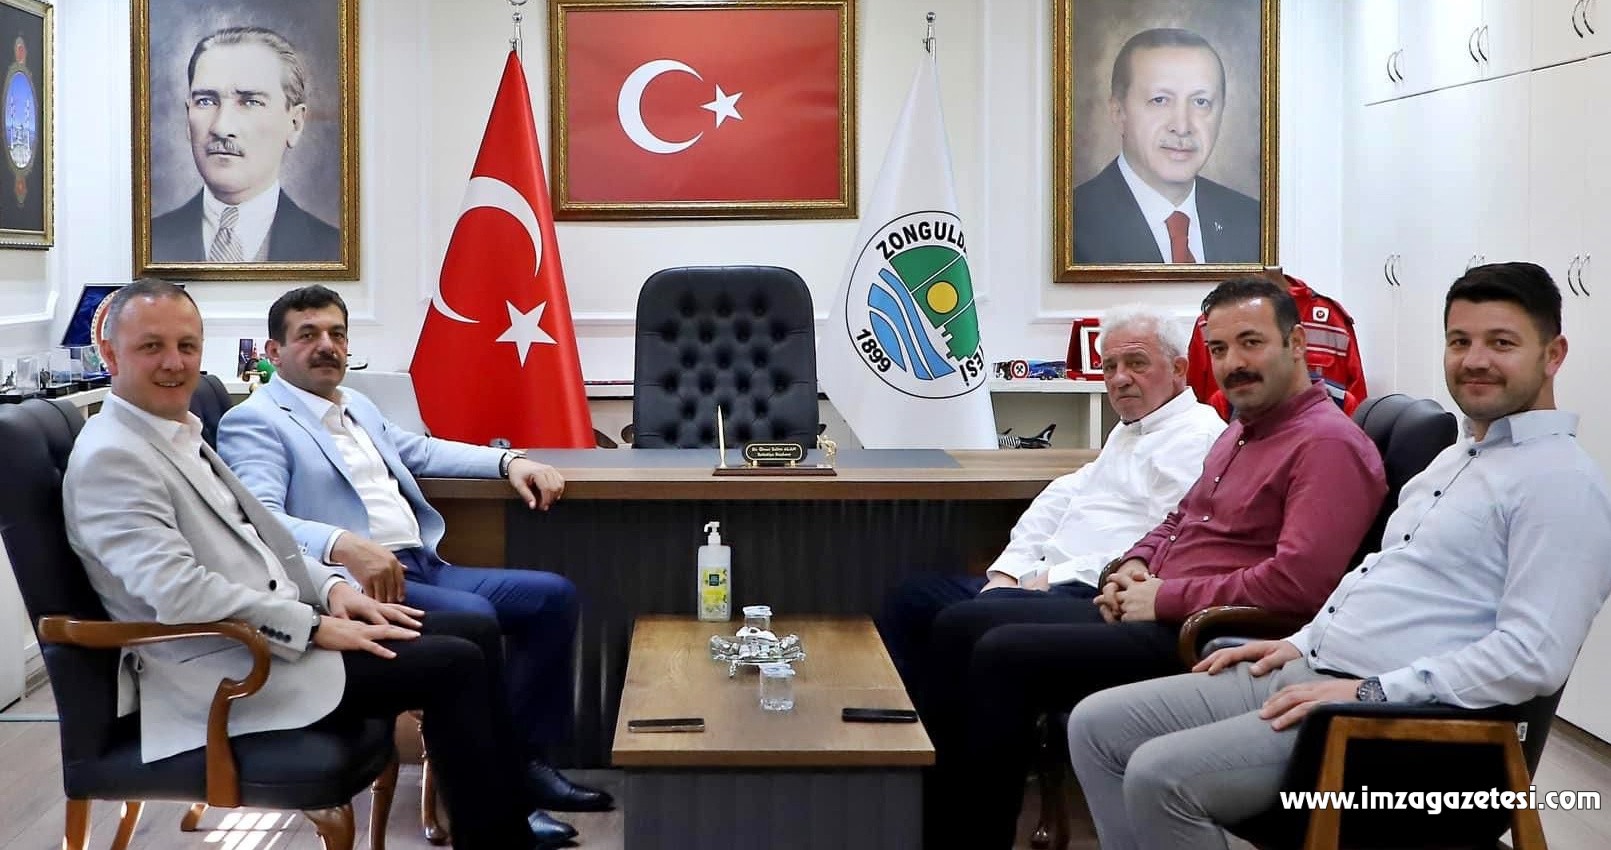 Zonguldak Kömürspor’a destek için buluştular! Başkan istedi onlar dinledi!